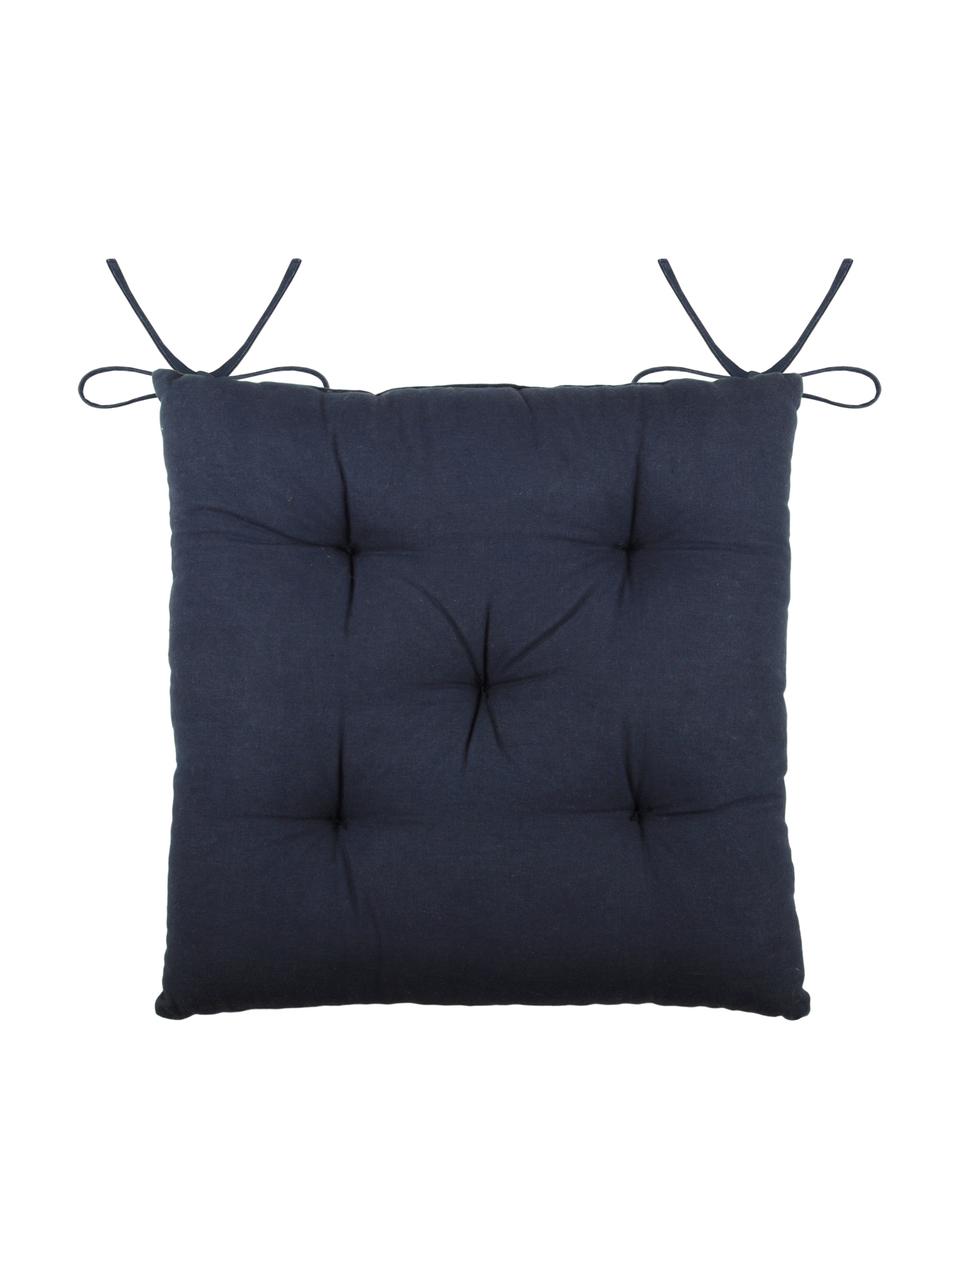 Cojín de asiento texturizado Concarneau, 100% algodón, Azul oscuro, An 40 x L 40 cm